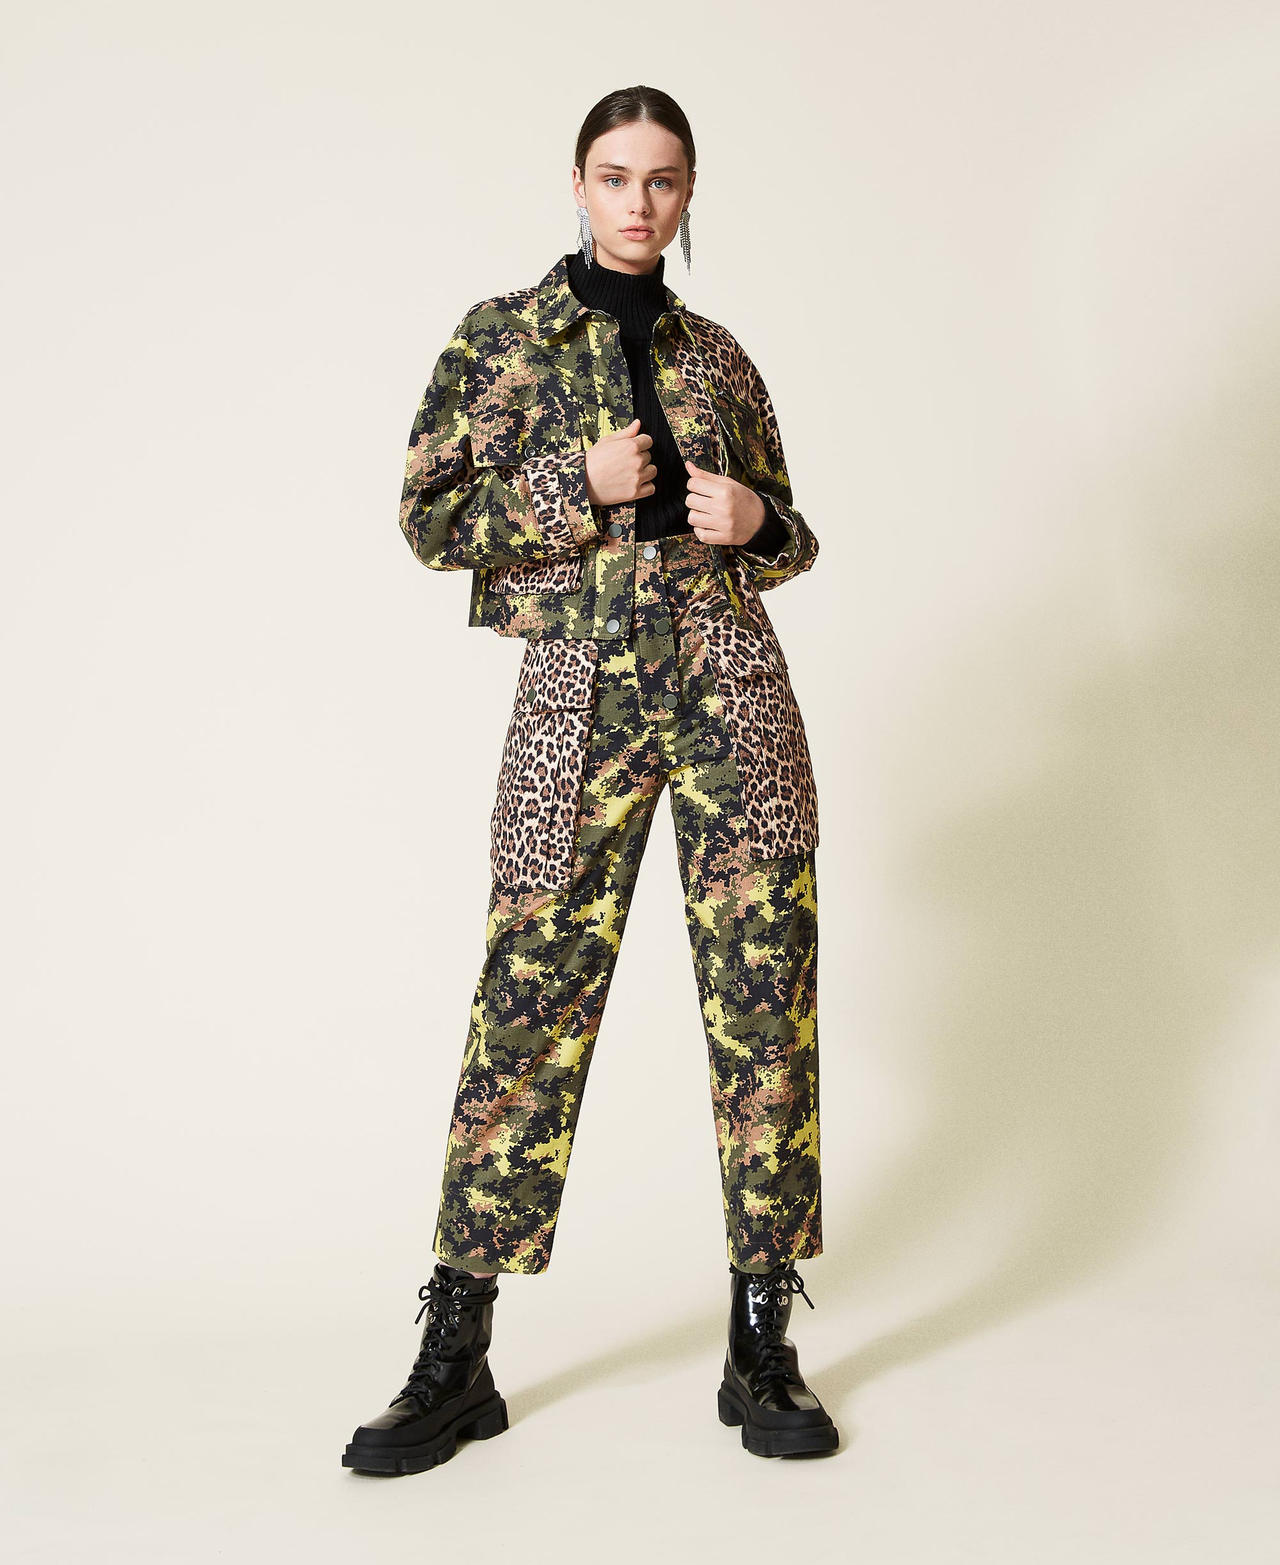 Pantalon cargo avec mélange d’imprimés Imprimé Camouflage Vert / Léopard Femme 212AP2521-02